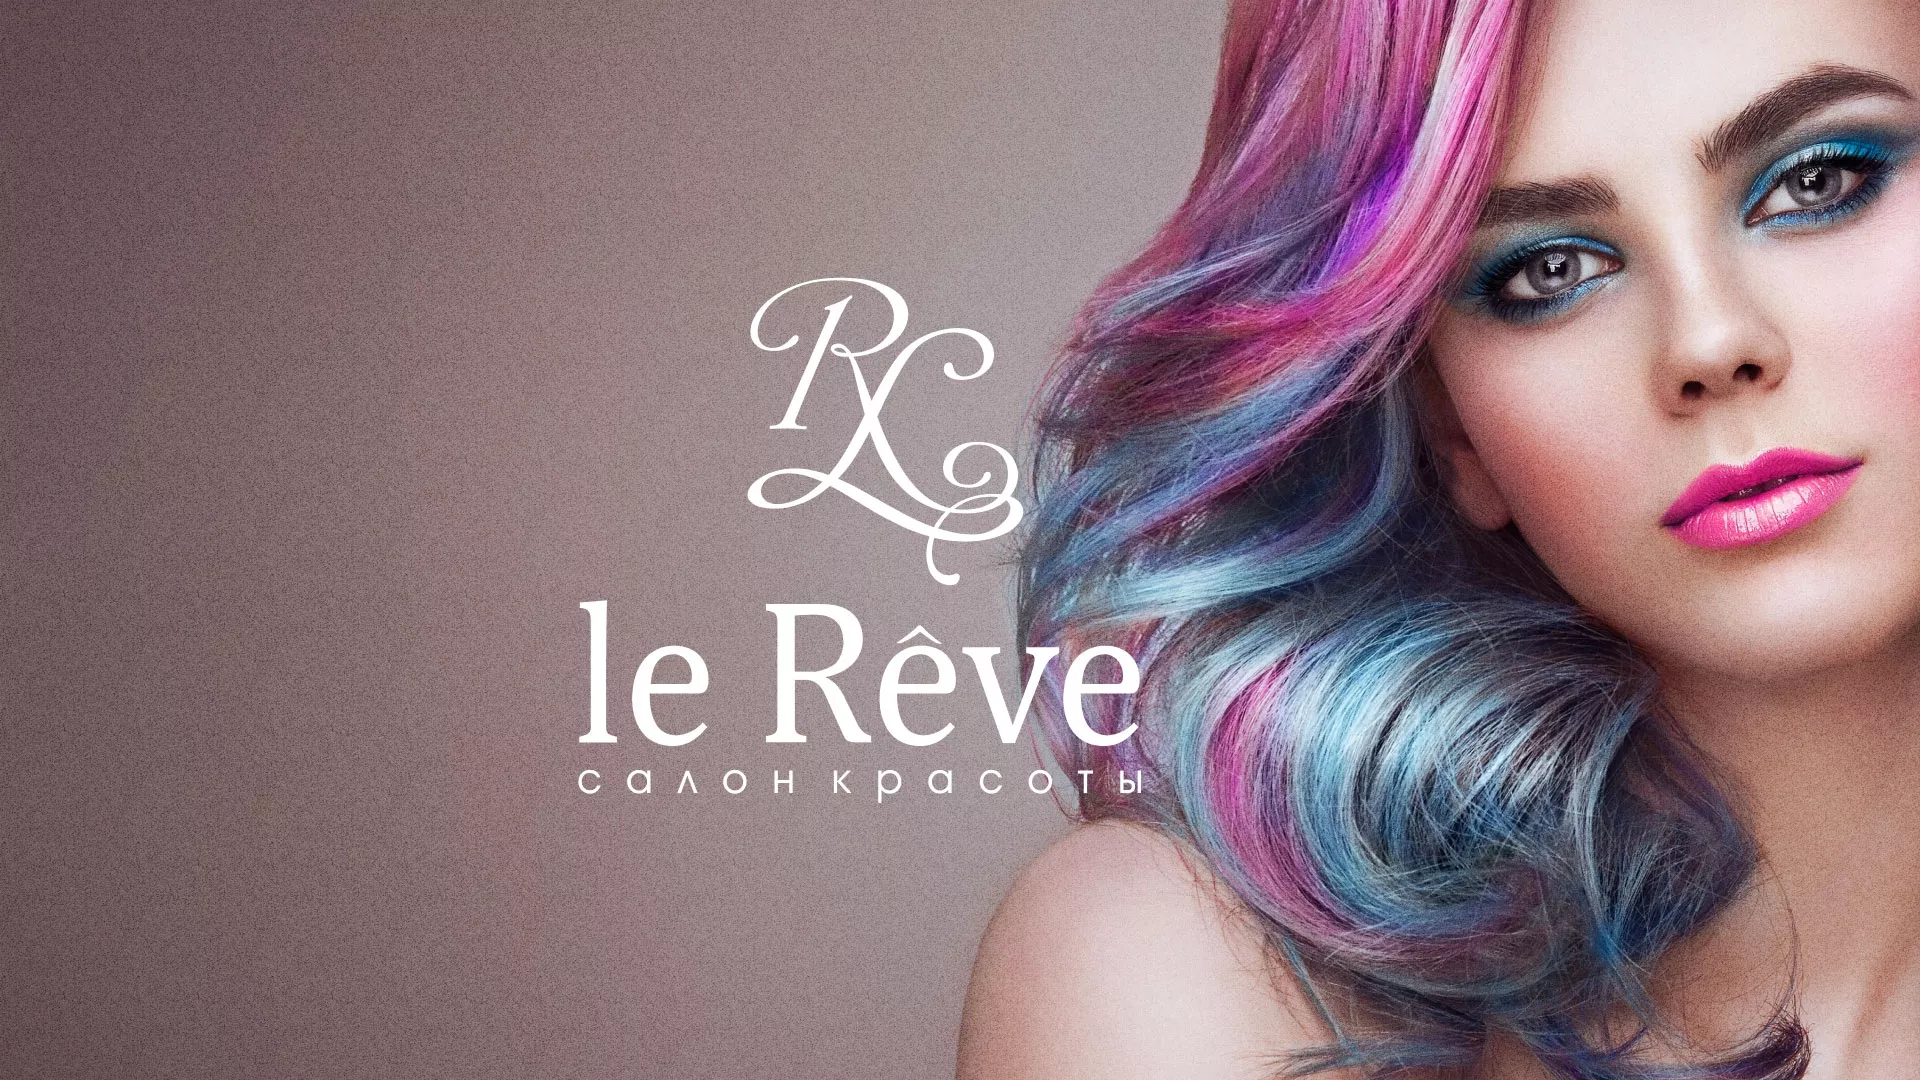 Создание сайта для салона красоты «Le Reve» в Среднеуральске